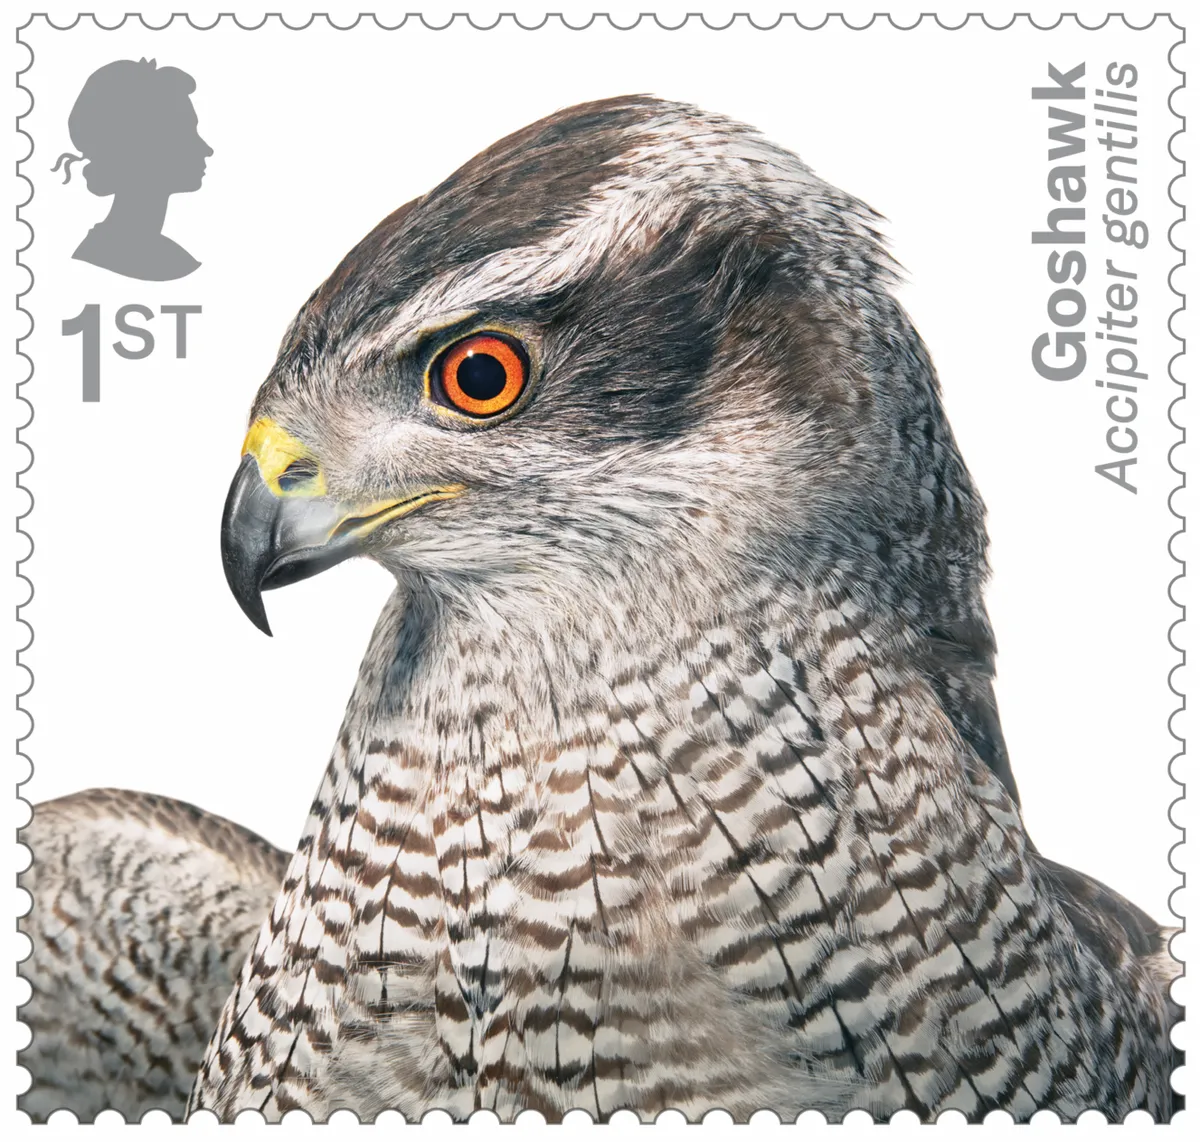 Birds of Prey Goshawk 400% stamp